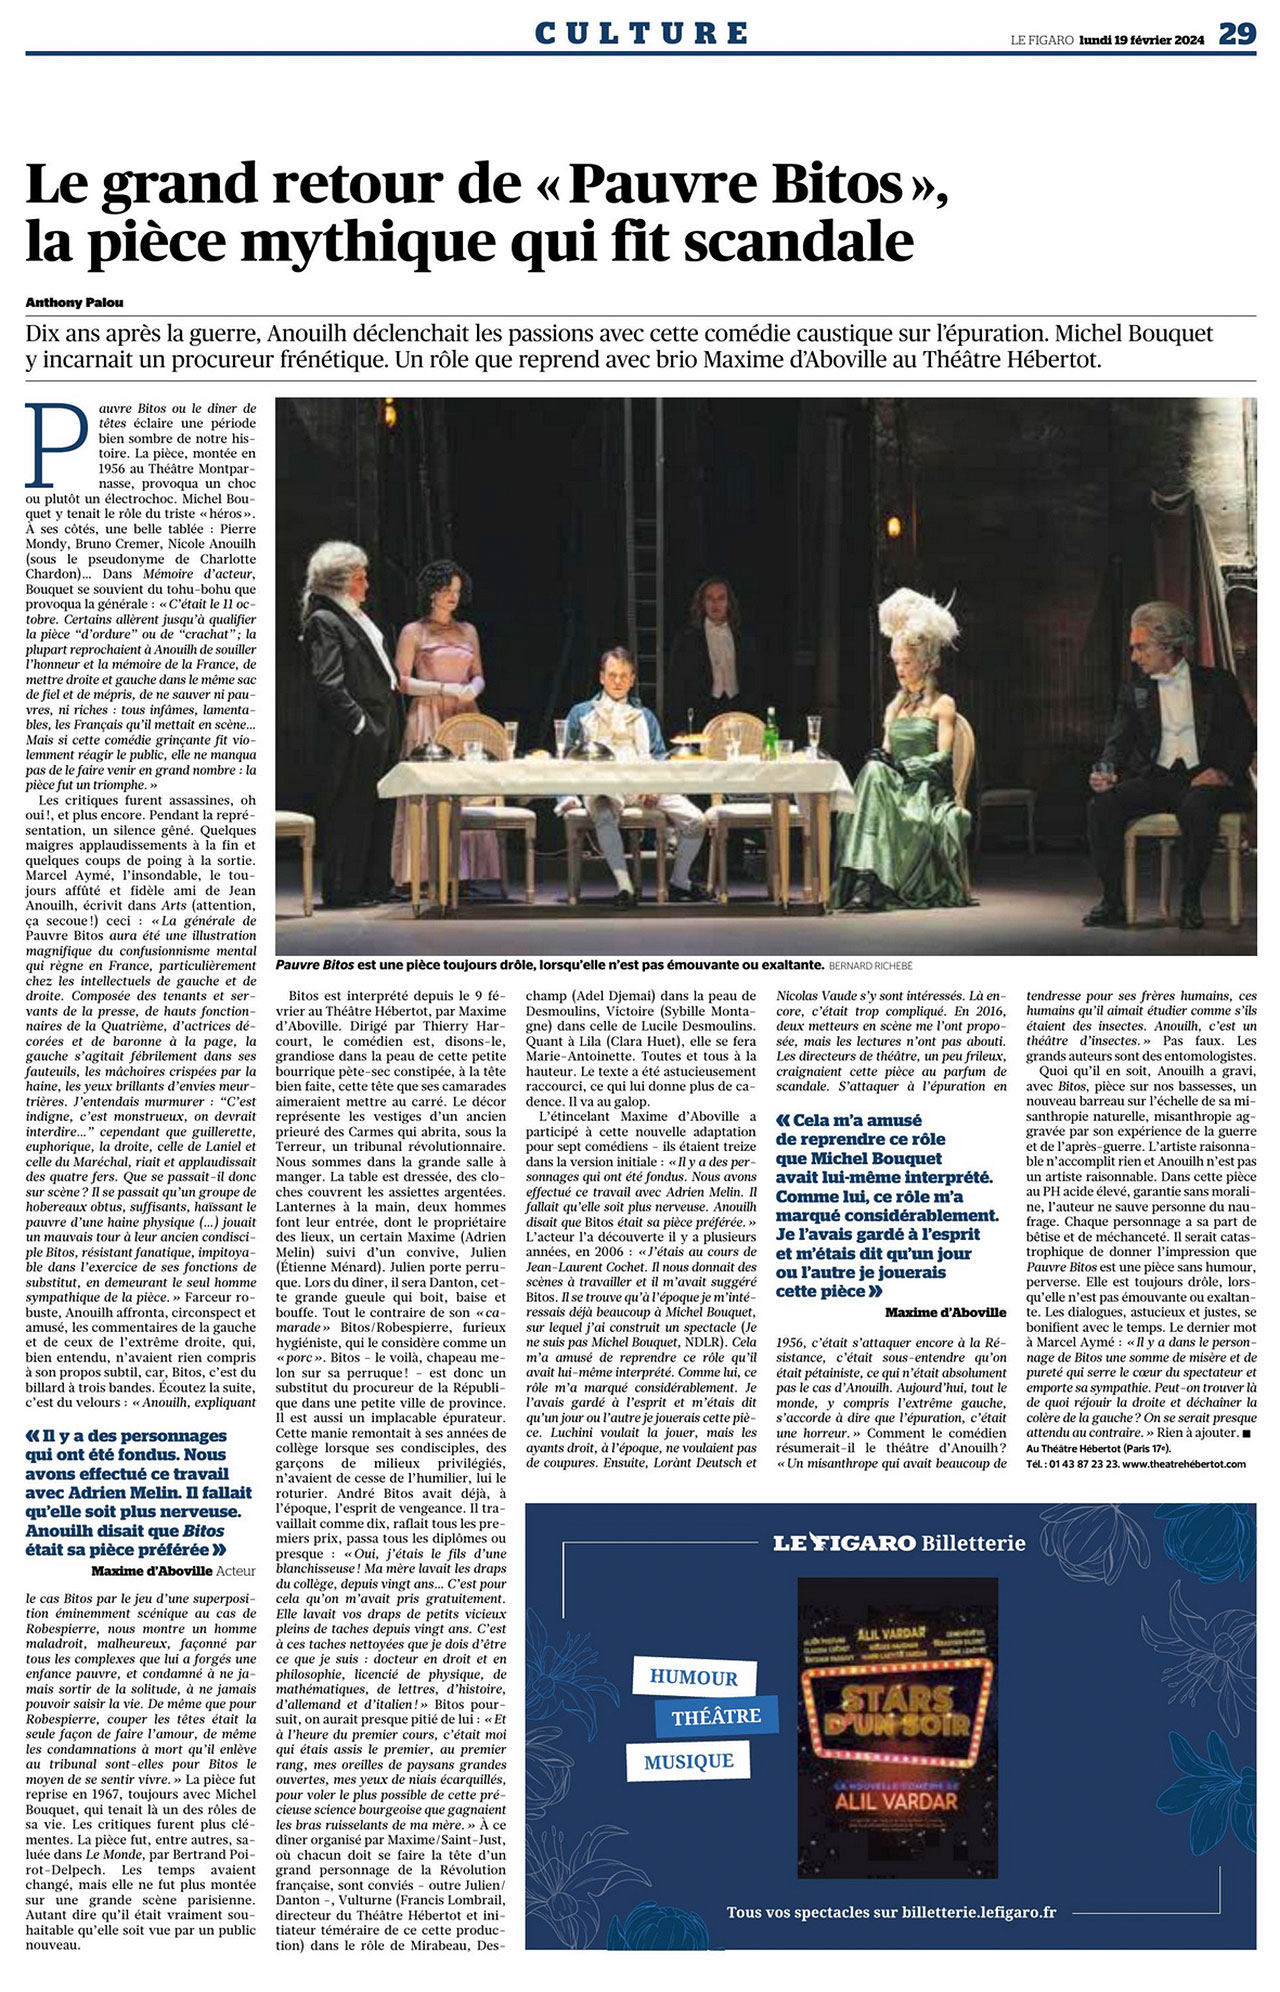 Le Figaro : Merveilleusement servie par la mise en scène de Thierry Harcourt (…) Promettons à la pièce un tollé à la mesure du talent d’Anouilh, et de ses splendides interprètes.